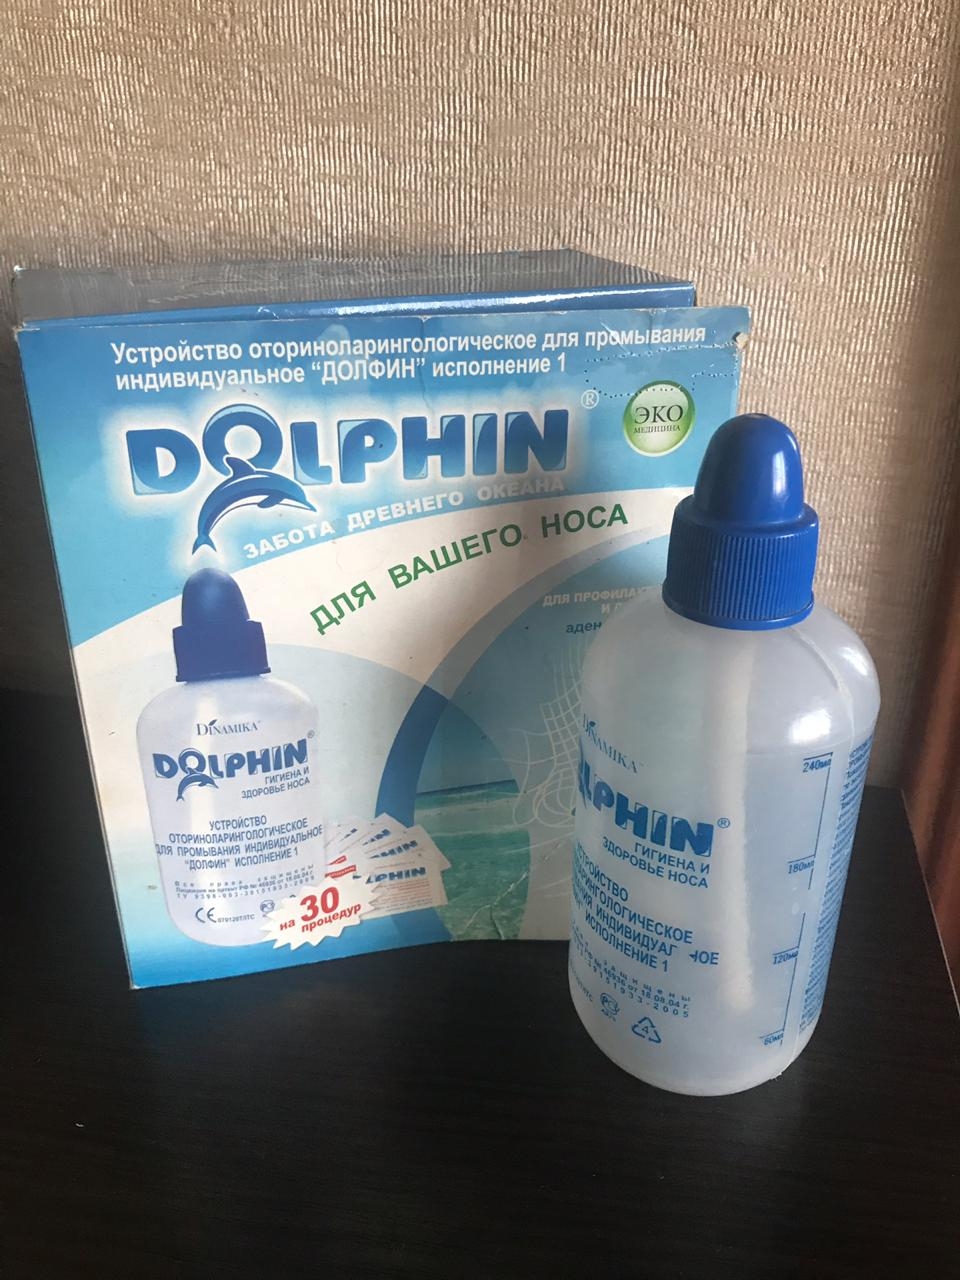 Долфин для промывания носа отзывы взрослых